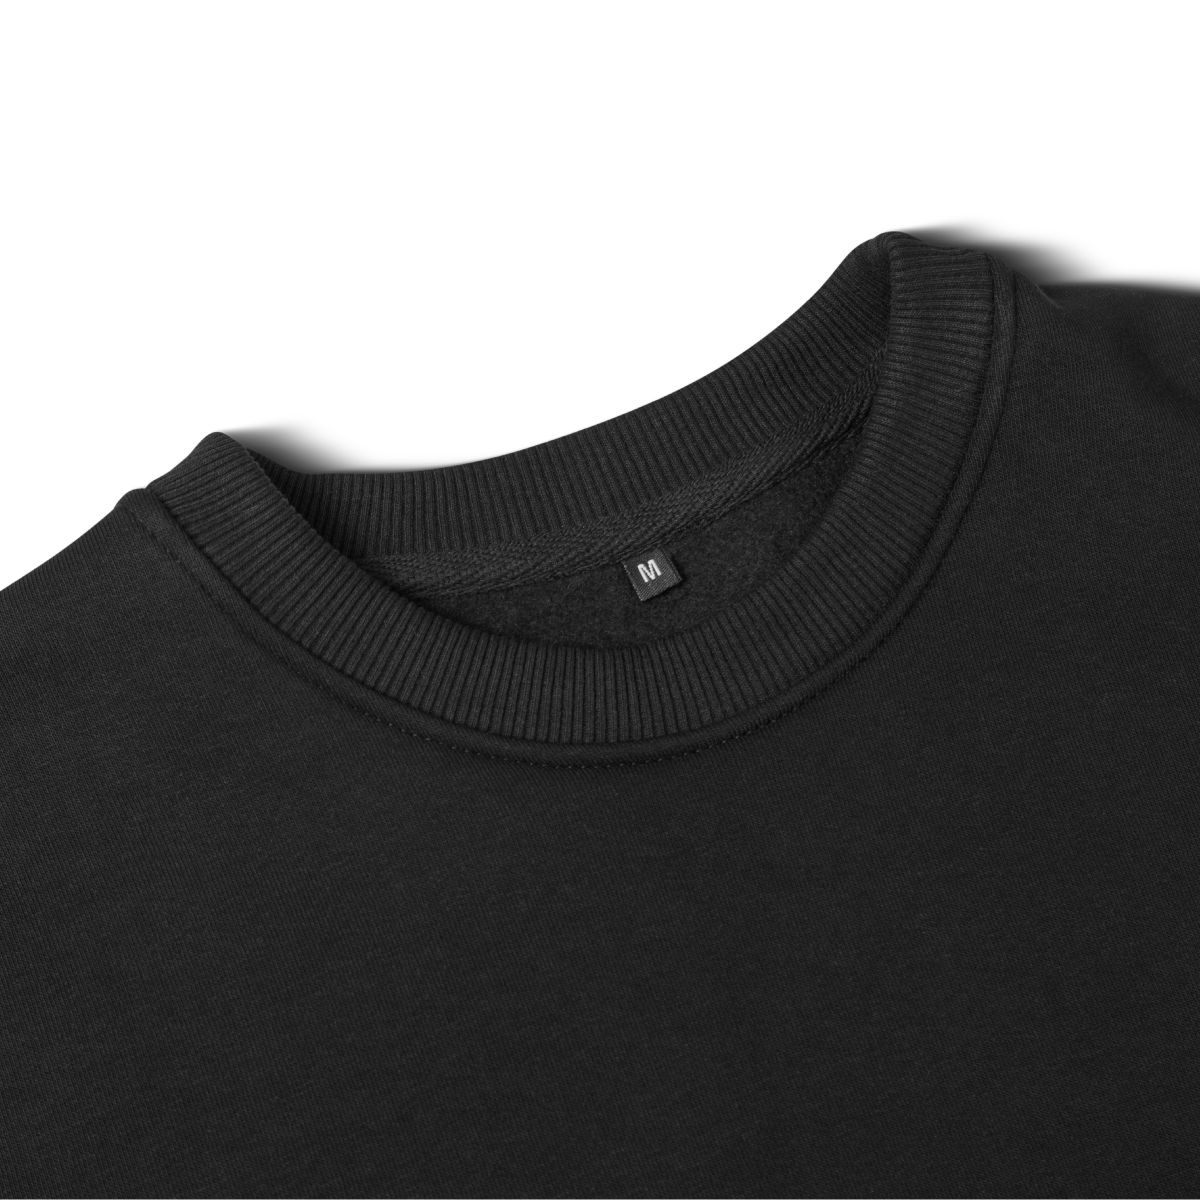 Свитшот Base Soft Sweatshirt. Свободный стиль. Цвет Черный/Black. Размер M 7